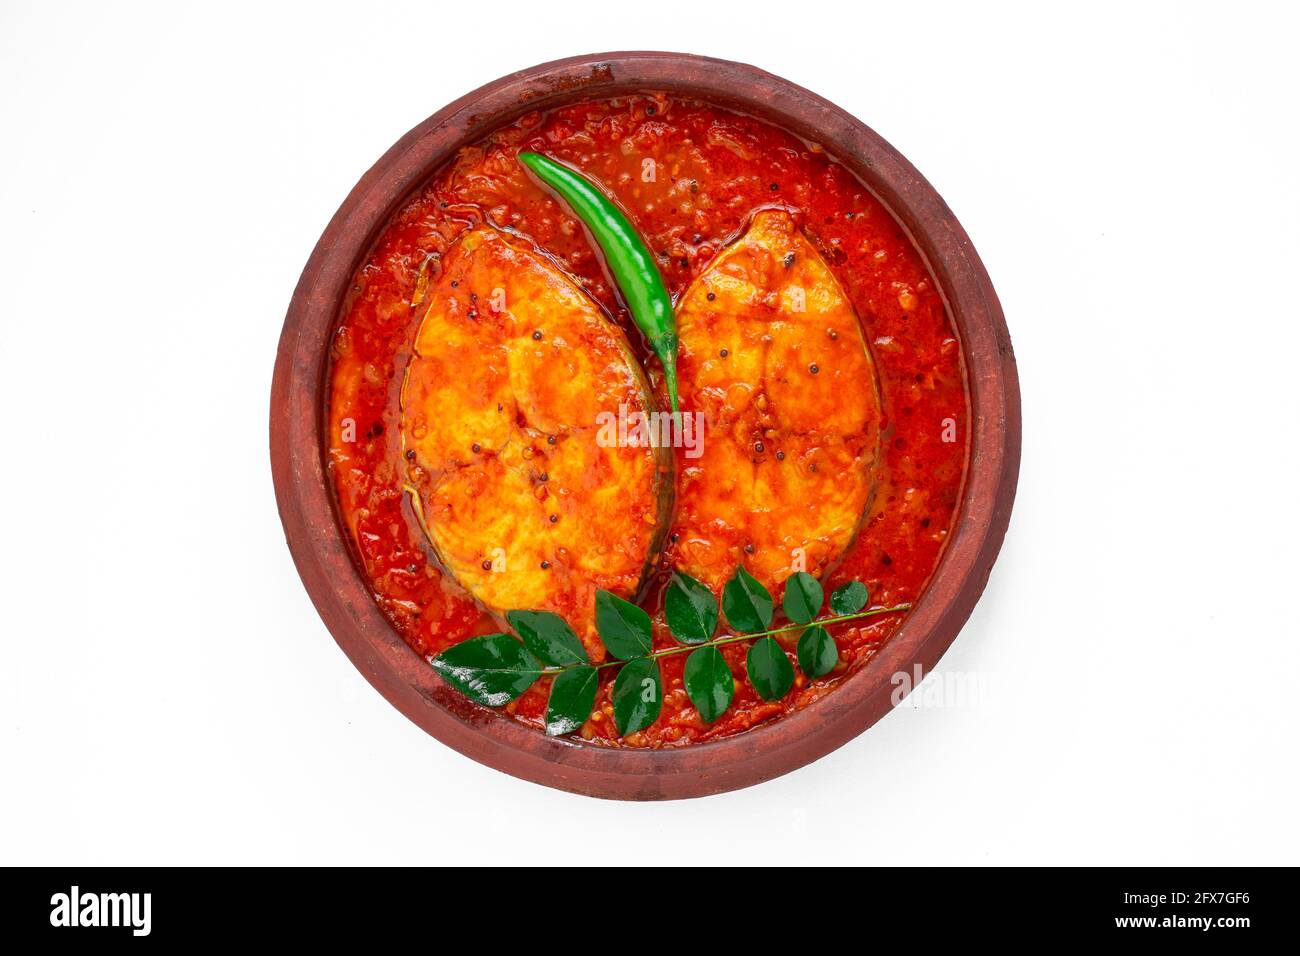 Fisch-Kerala-Spezial, Fisch-Seer-Fisch, traditionelles indisches Fisch-kerala-Spezial, in einer weißen Schüssel, garniert mit den Blättern des Kerrains und frischen grünen Chilischoten Stockfoto